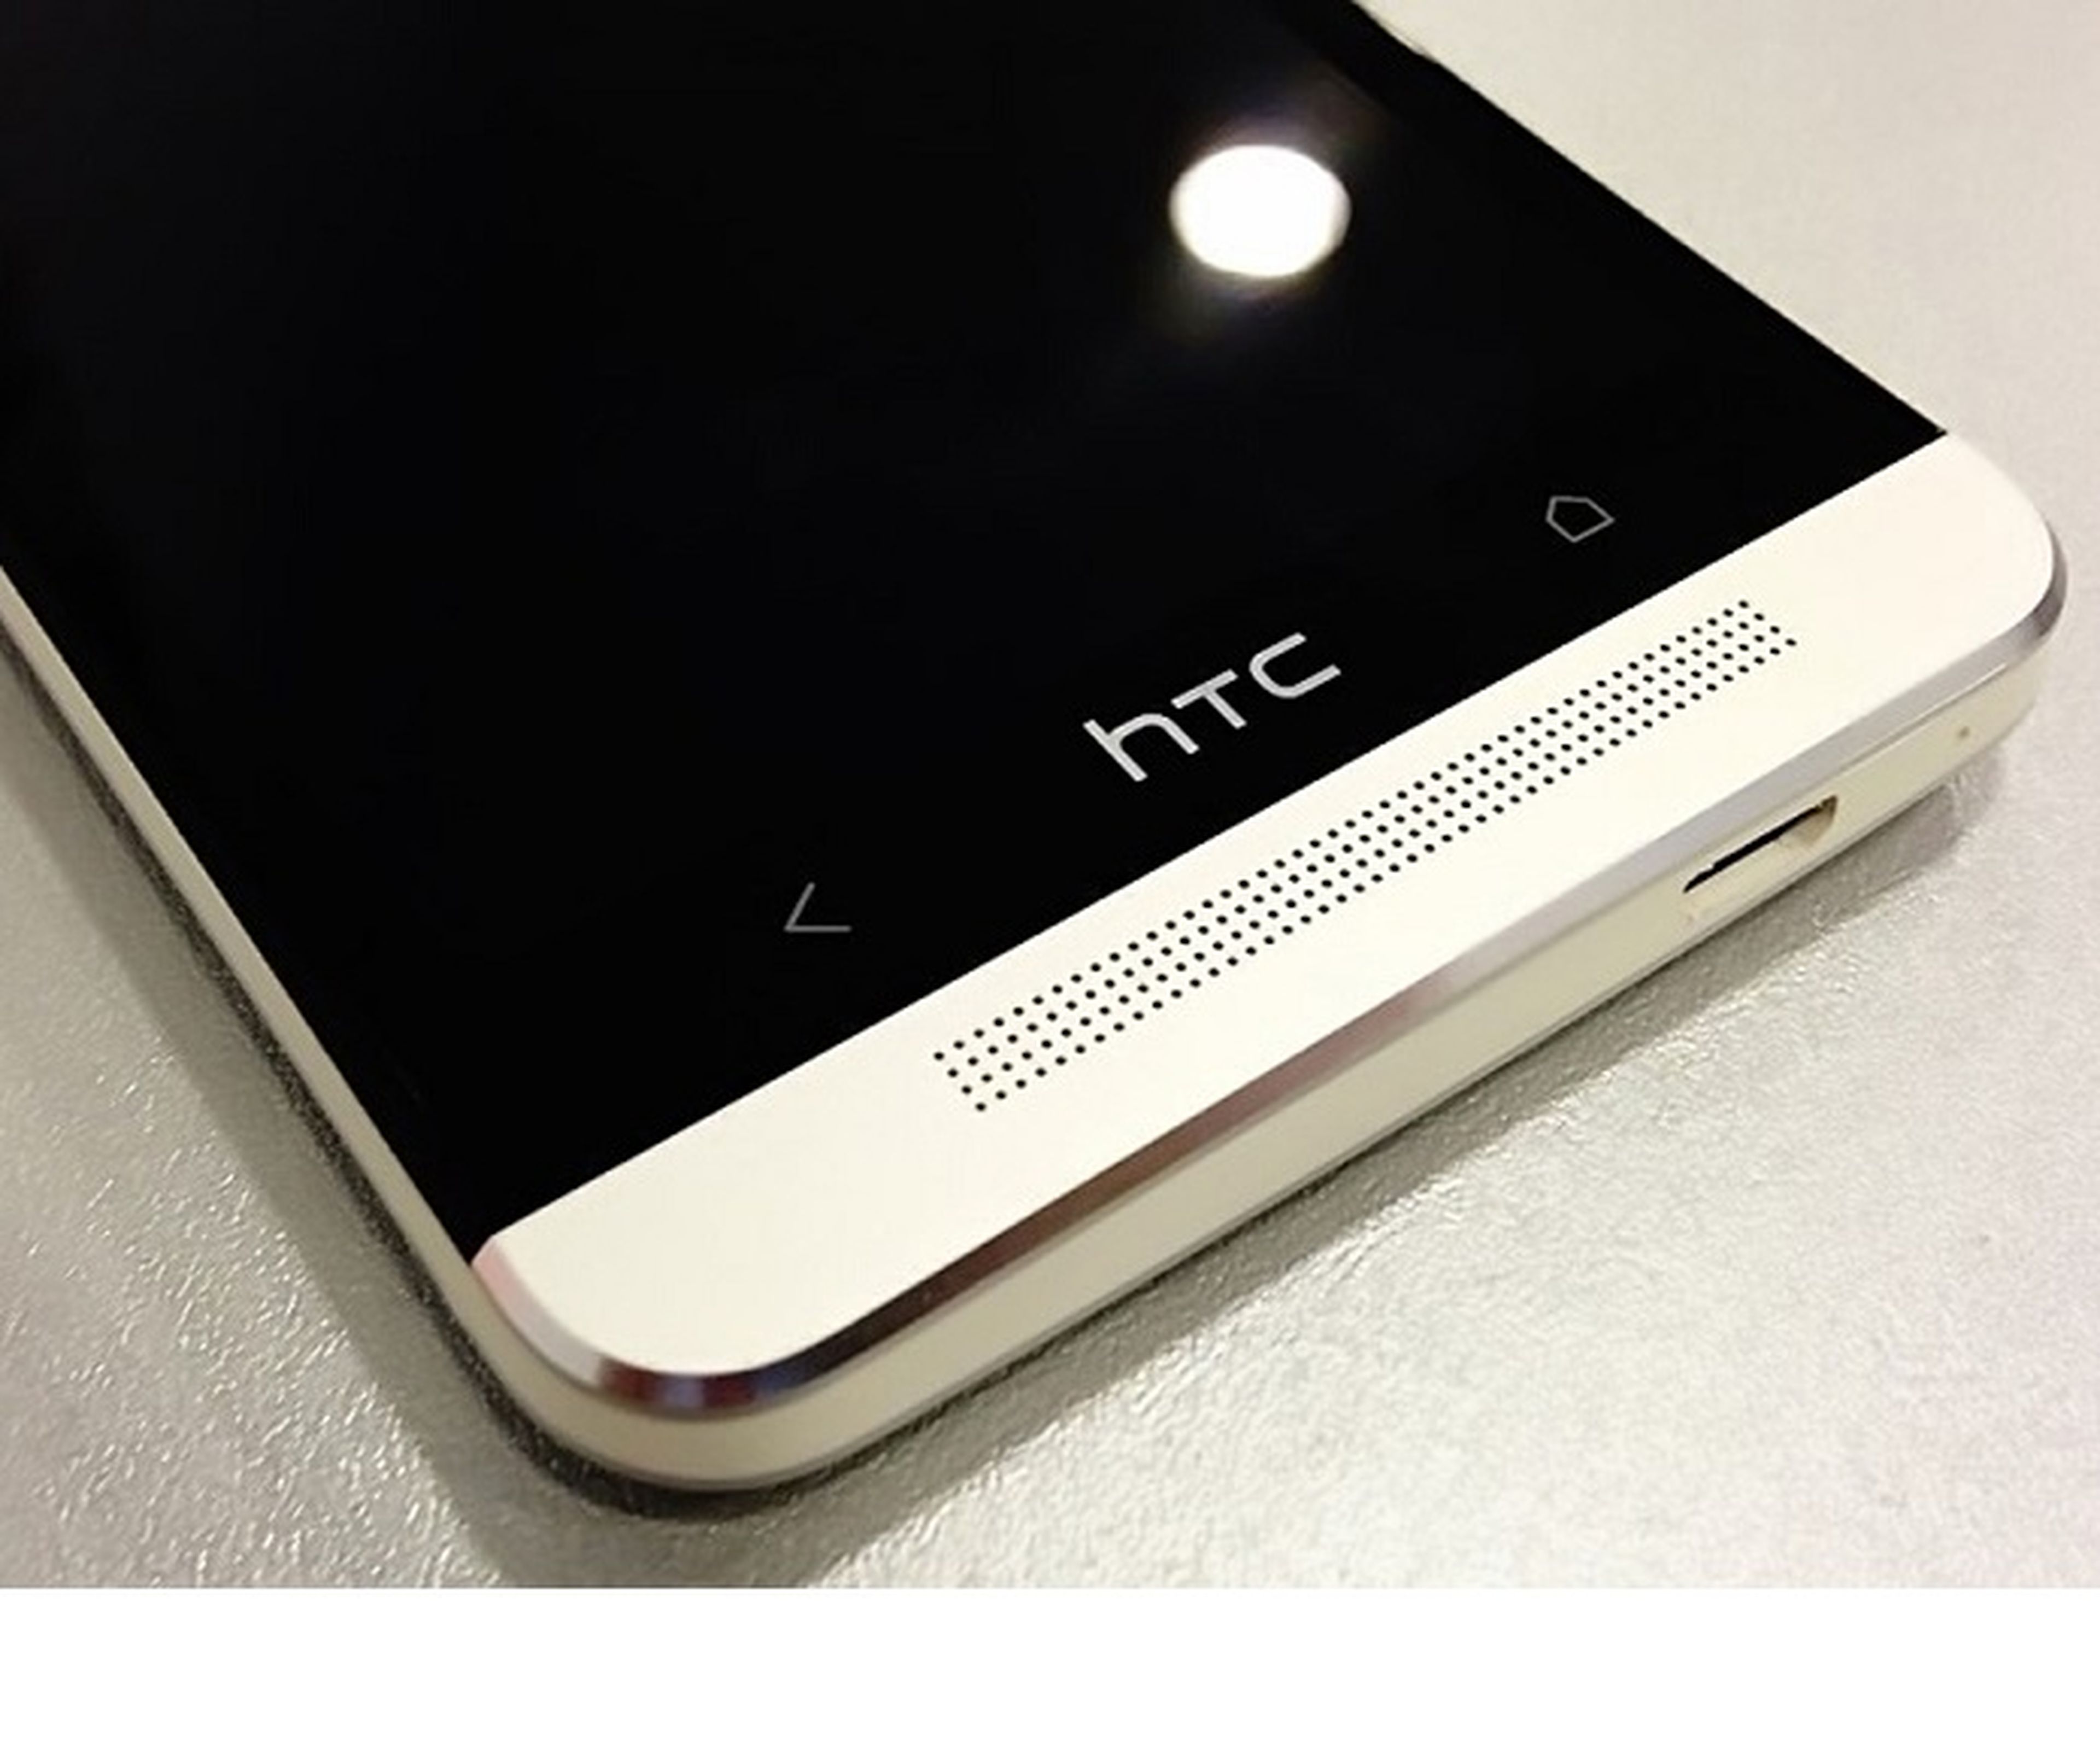 HTC lanzaría su nuevo smartphone Windows Phone 8 en otoño